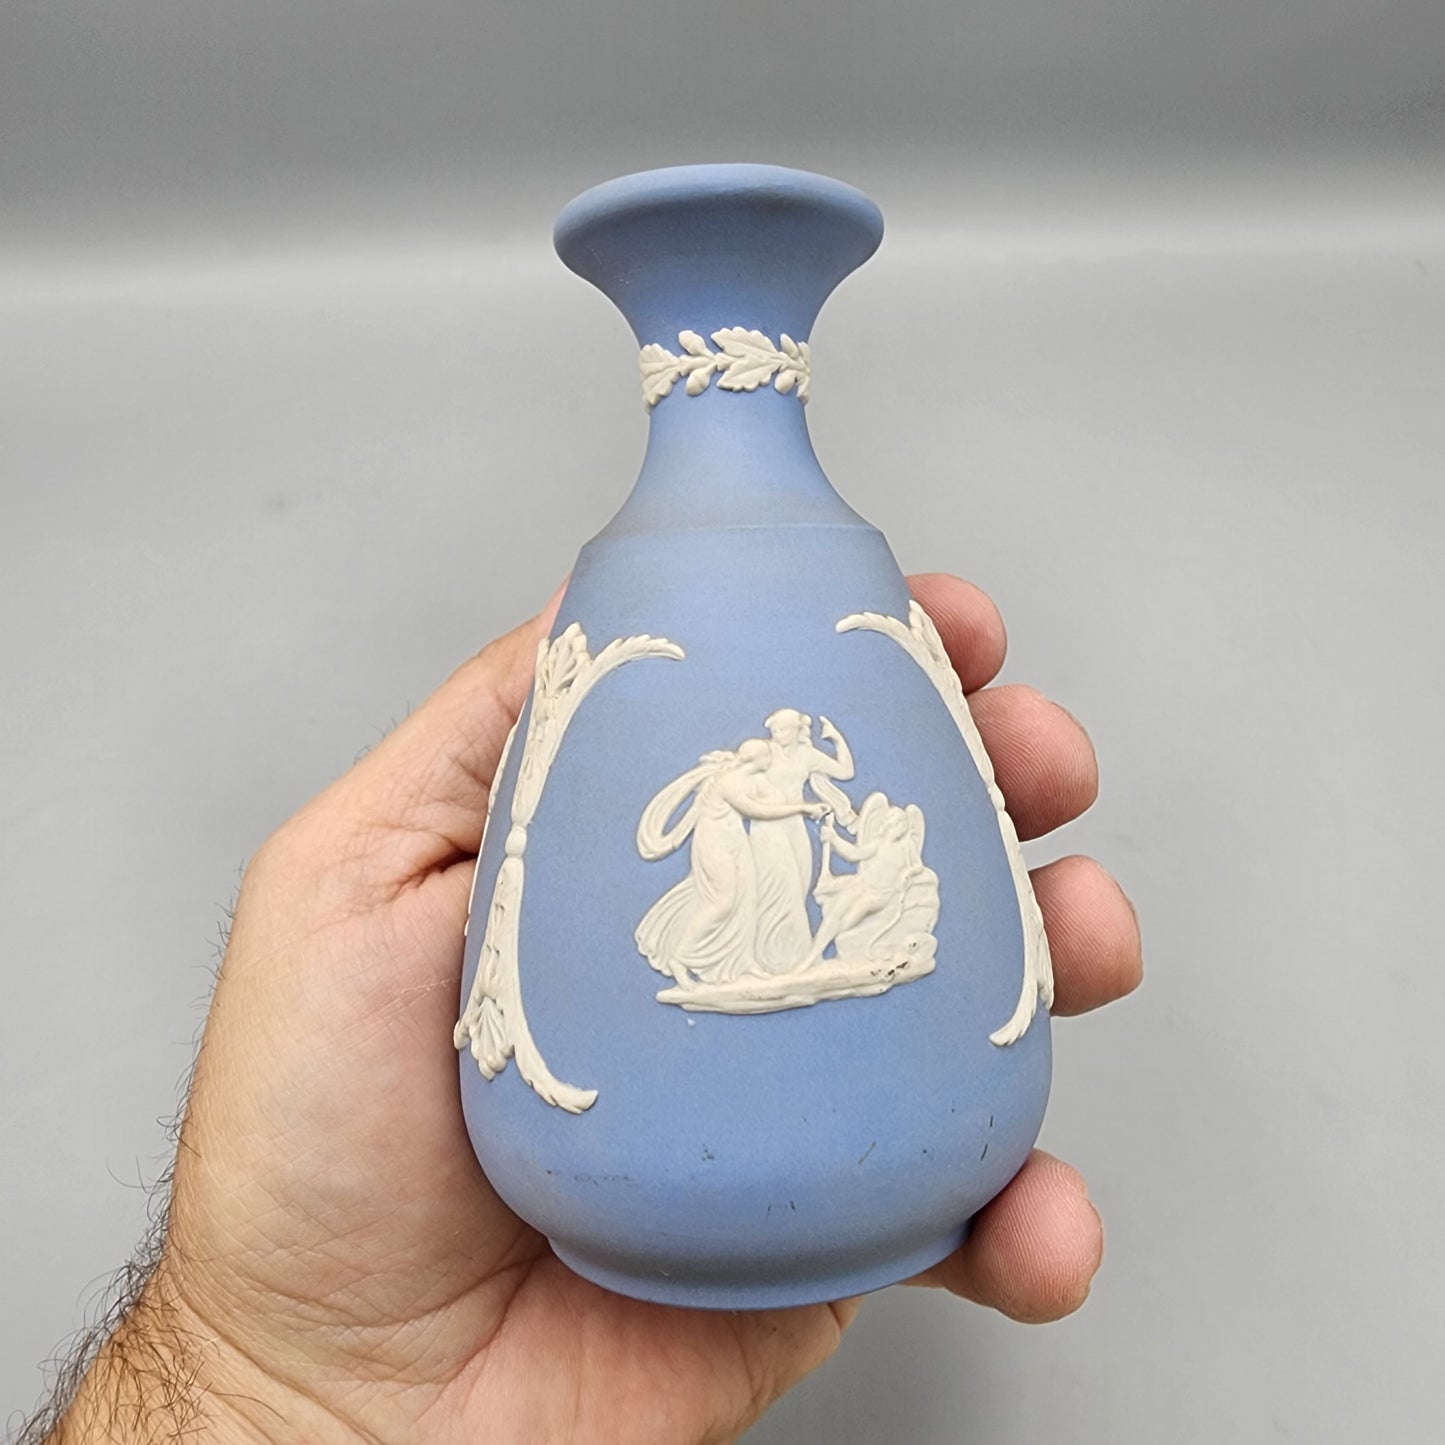 Wedgwood Light Blue Jasperware Bottle Vase